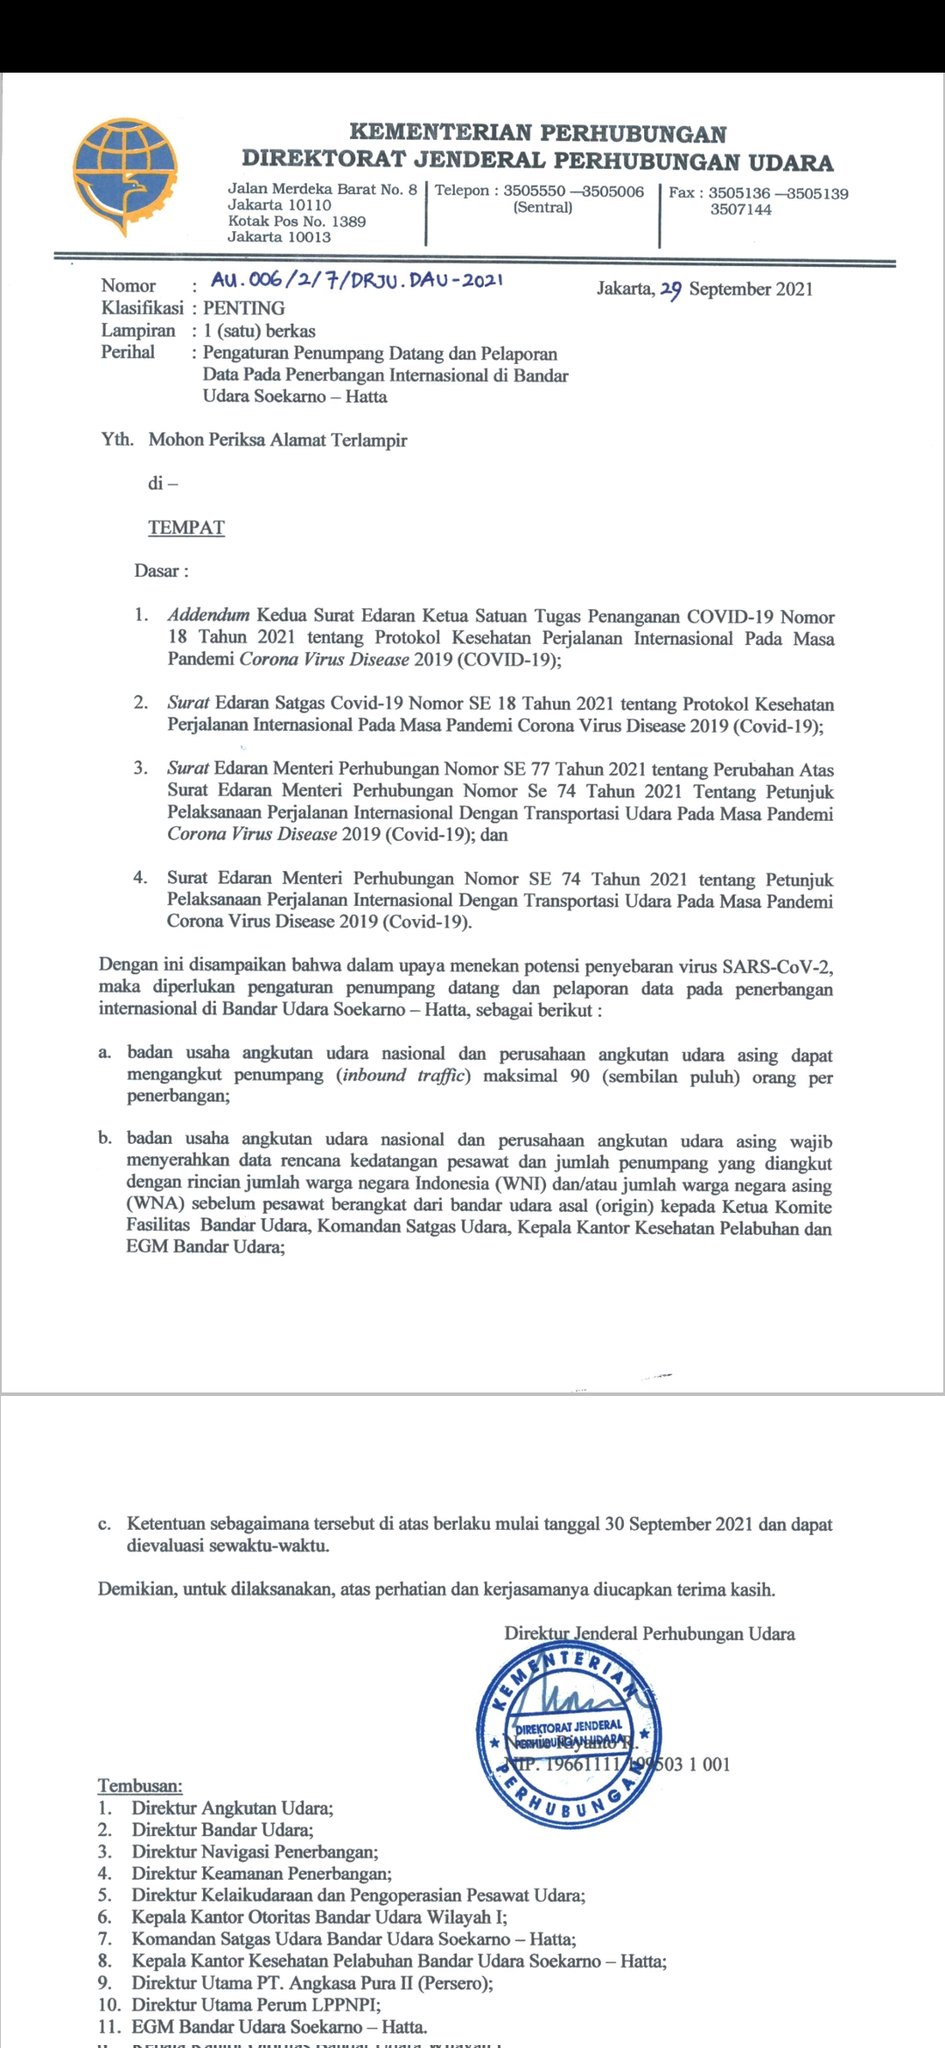 Indonesia limita los vuelos internacionales entrantes - Coronavirus Indonesia: condiciones de entrada, cancelación - Foro Sudeste Asiático